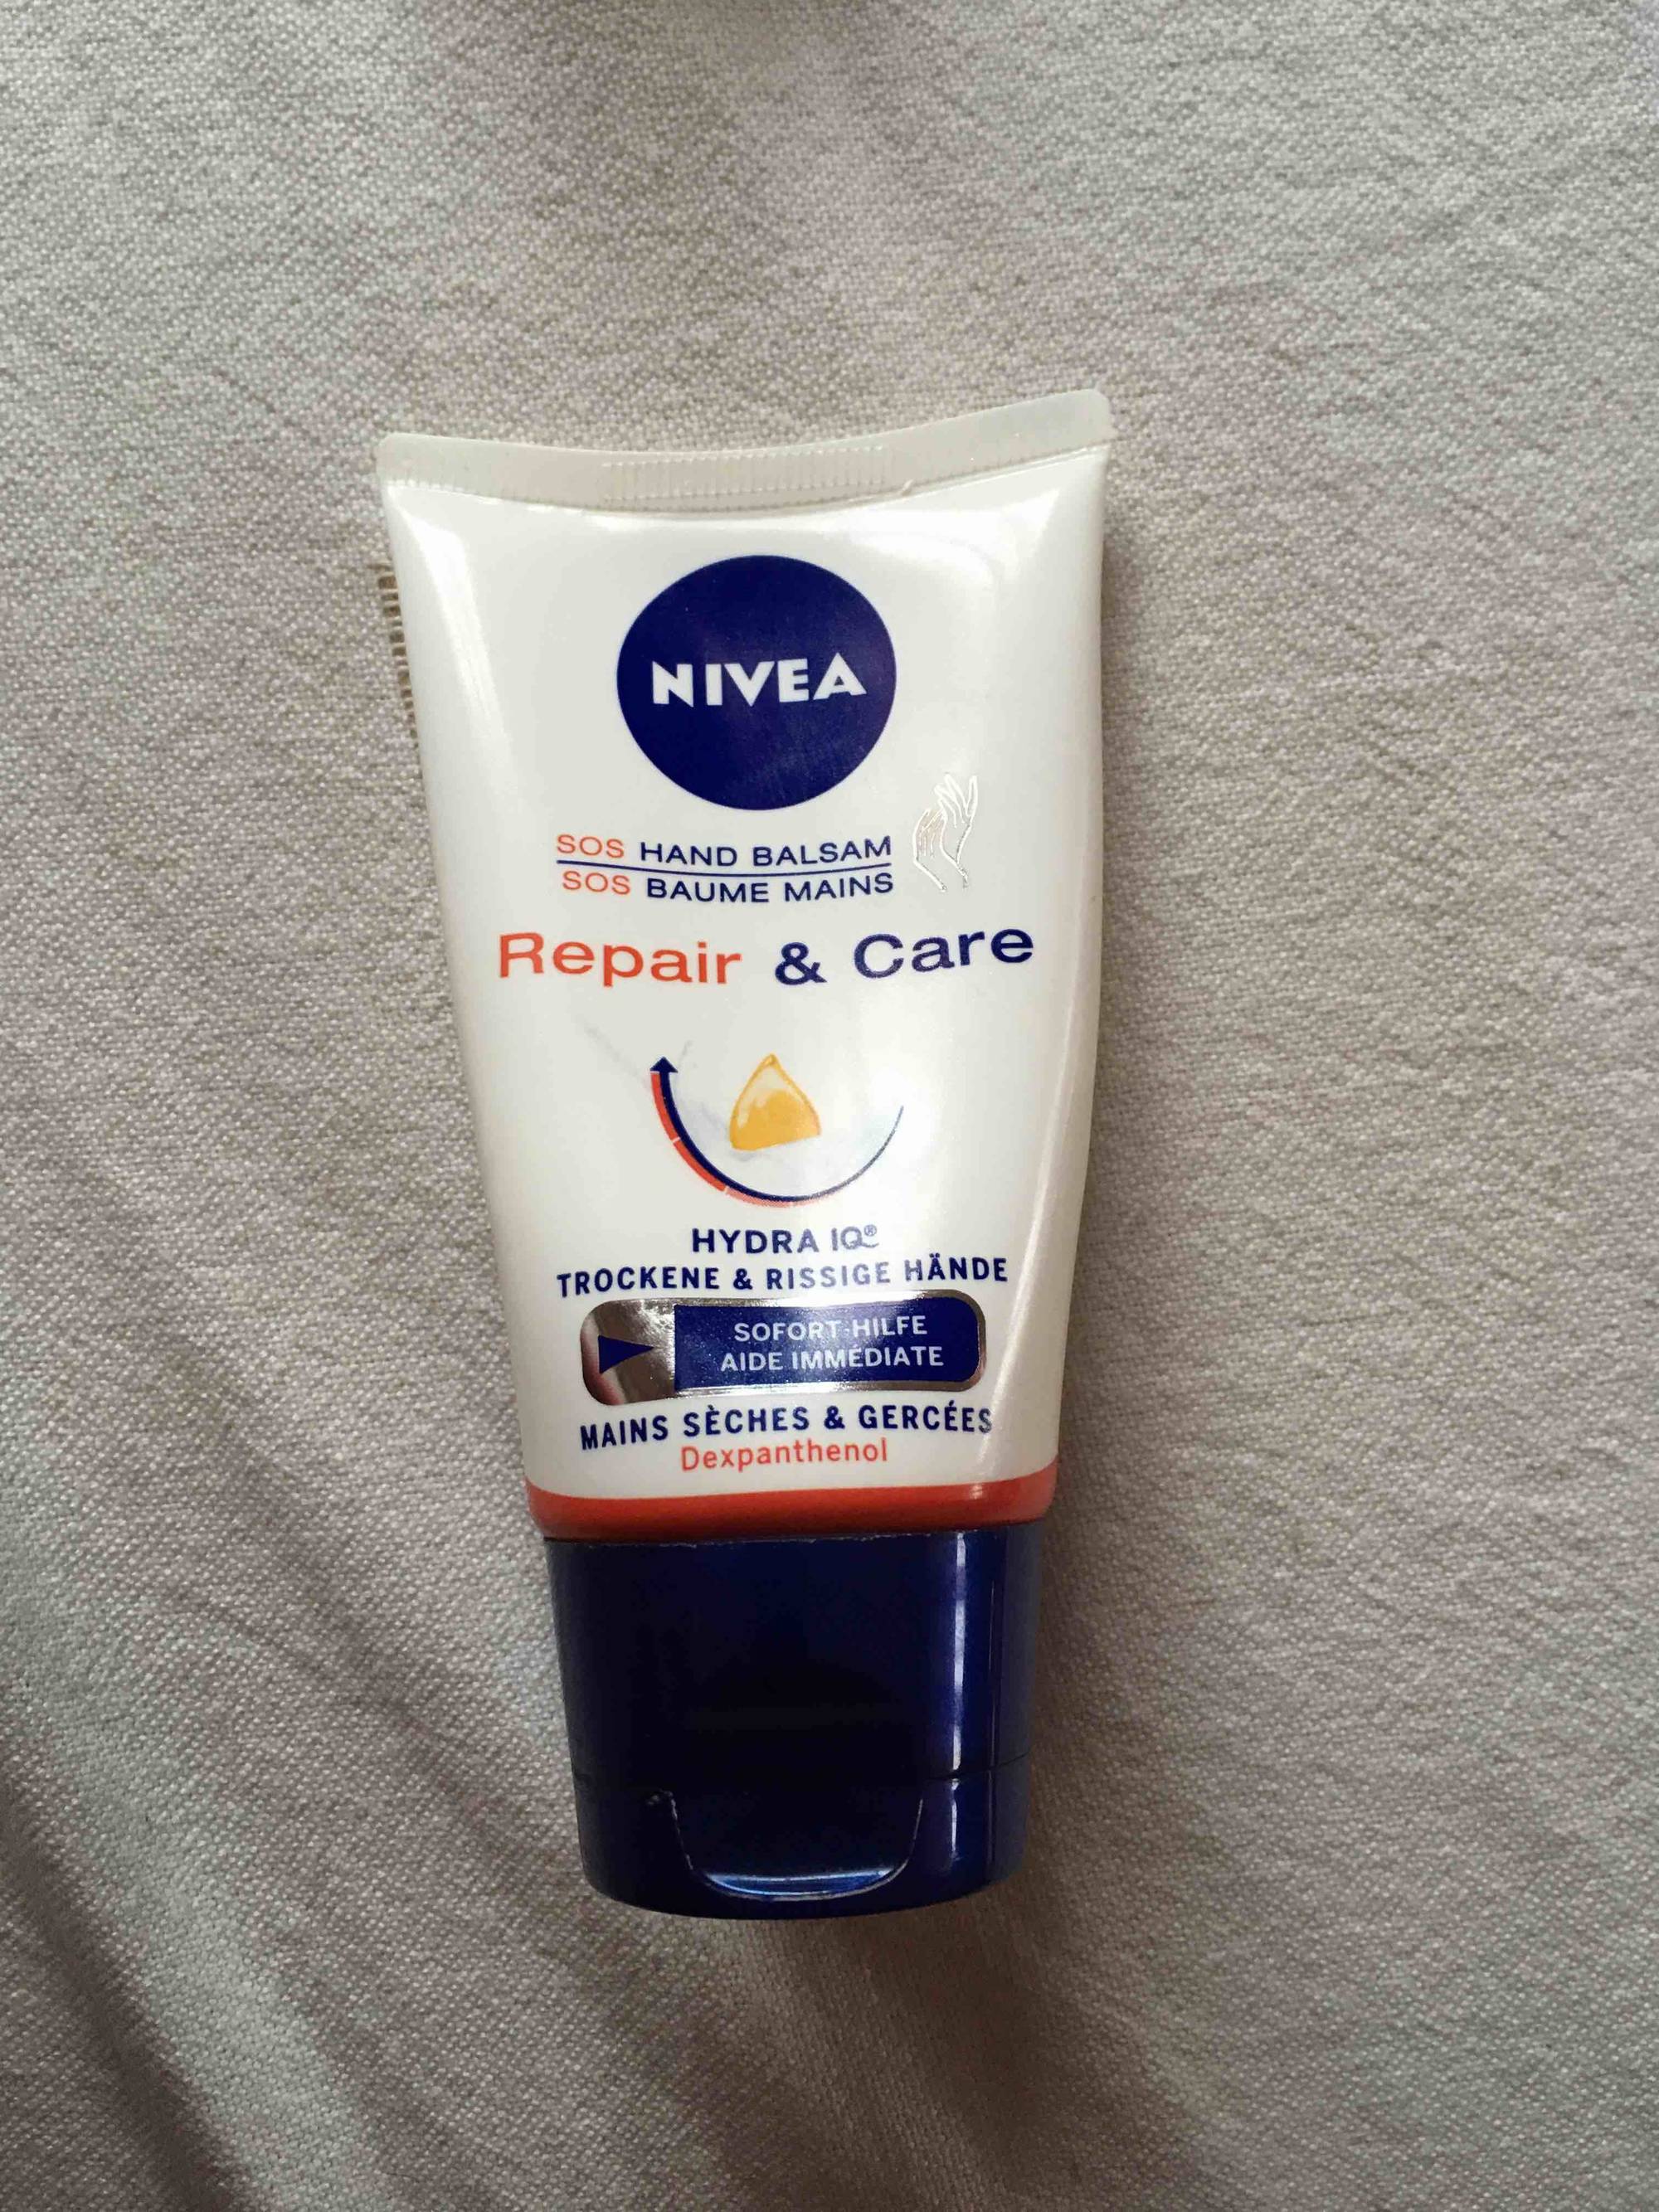 NIVEA - Repair & care - SOS baume mains